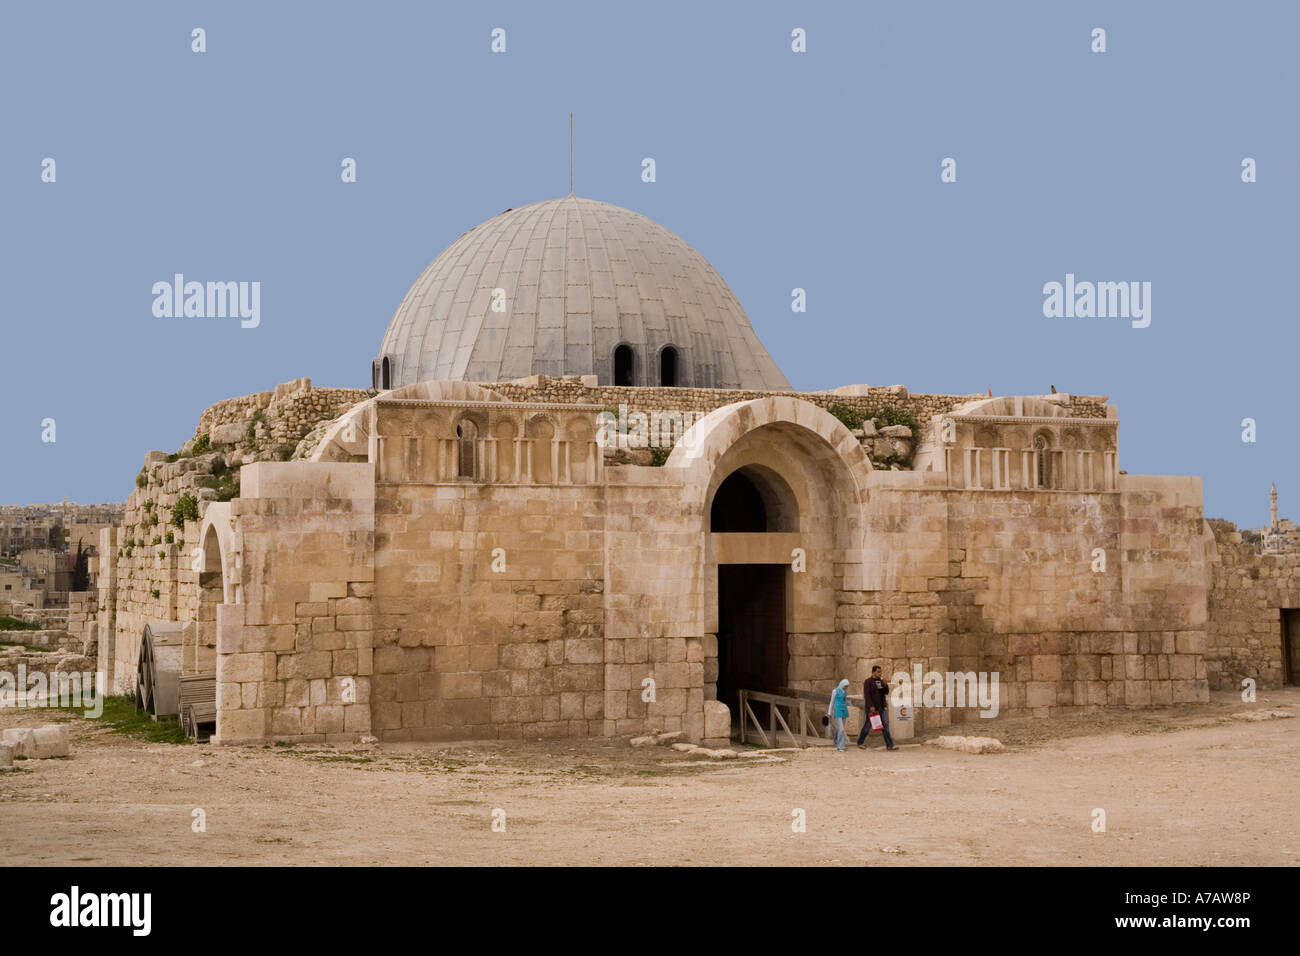 Jordan, Amman, Citadel, Umayyad palace Stock Photo